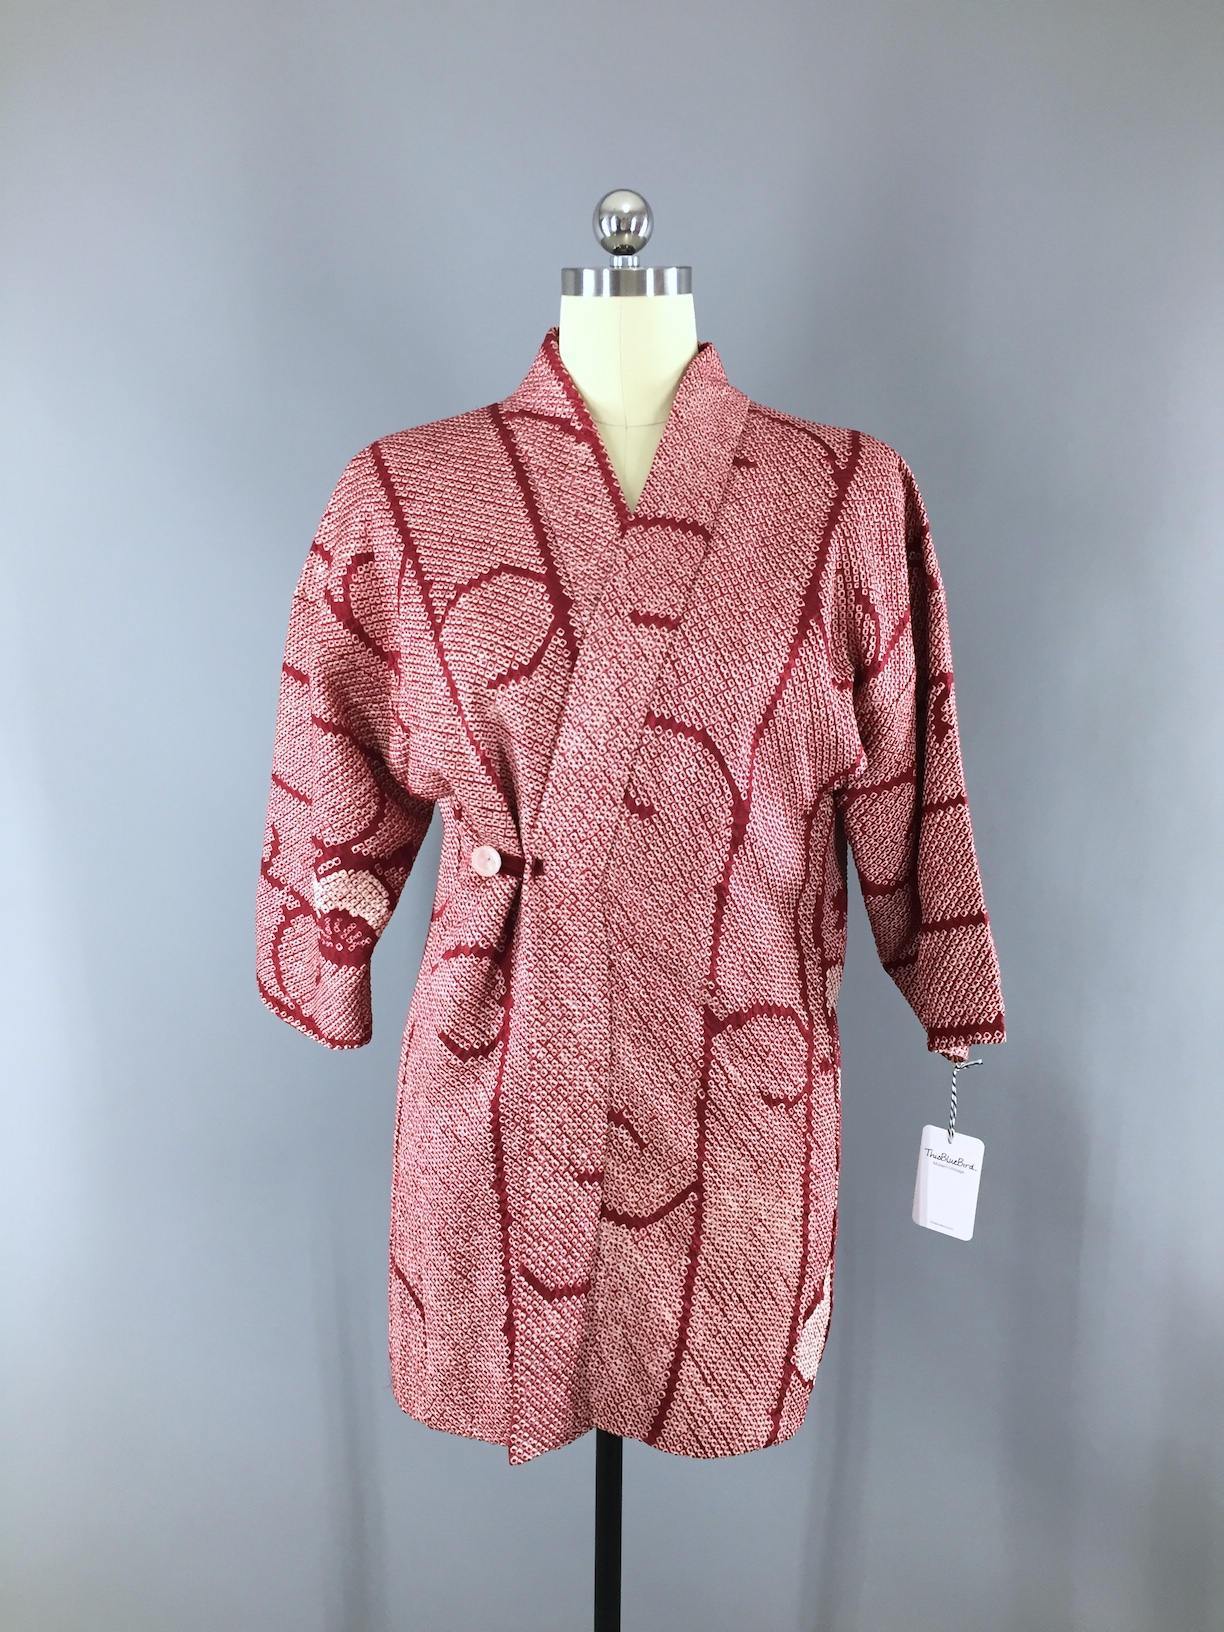 1950s Vintage Silk Haori Kimono Samue Jacket Wrap Coat / Dark Red & White Shibori Dyed - ThisBlueBird